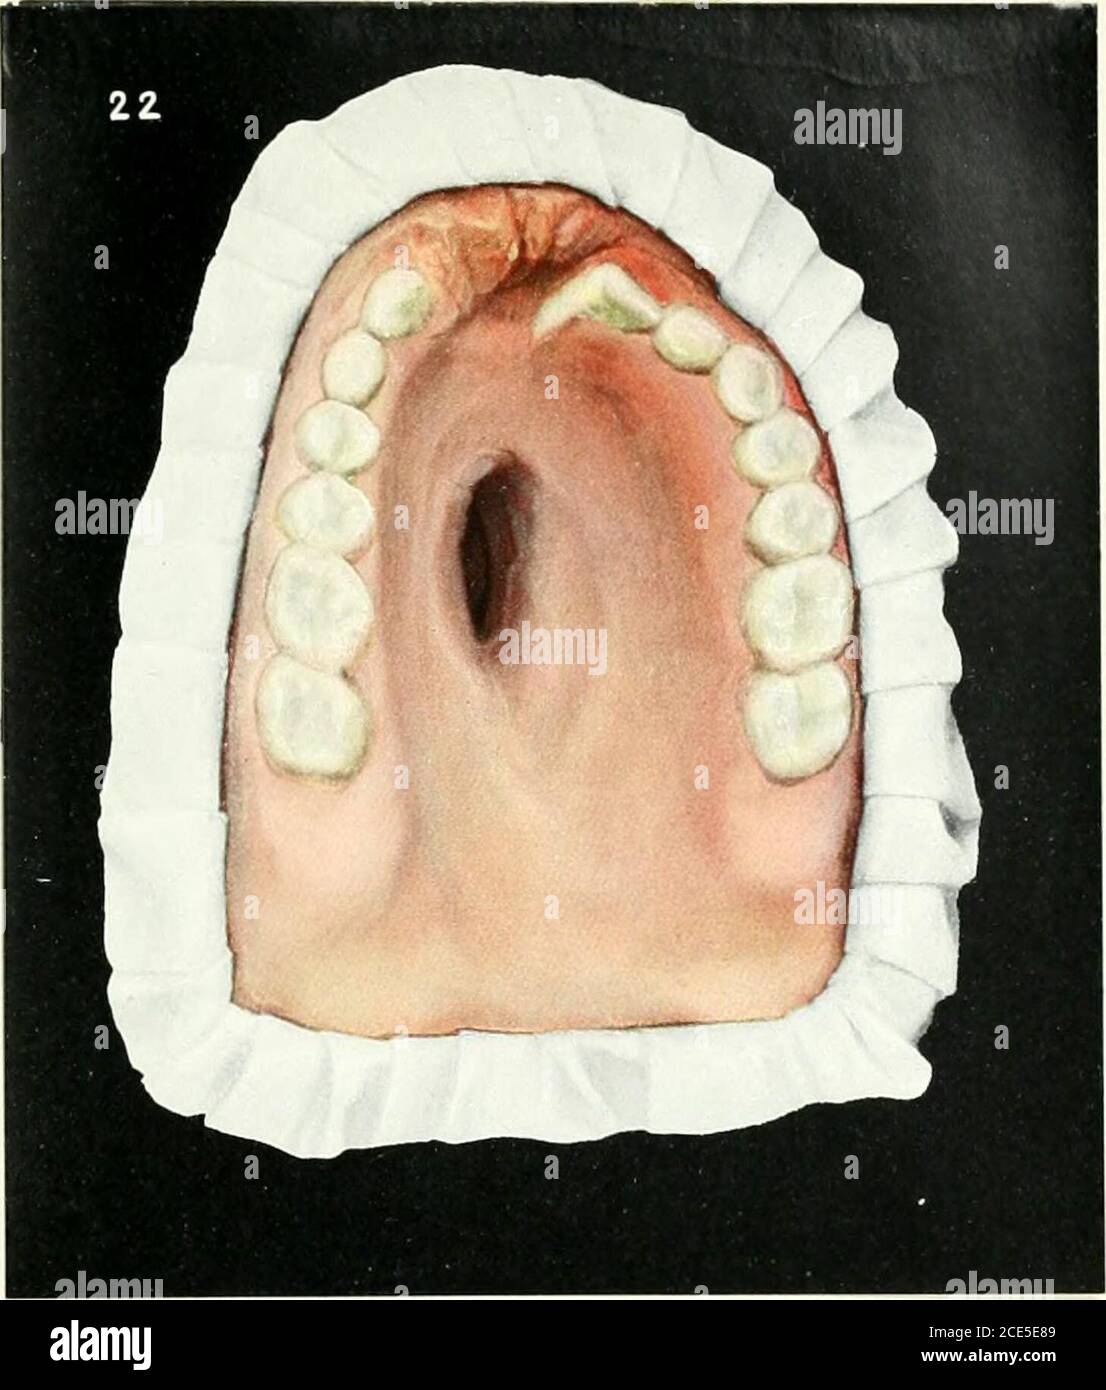 Mouth destruction